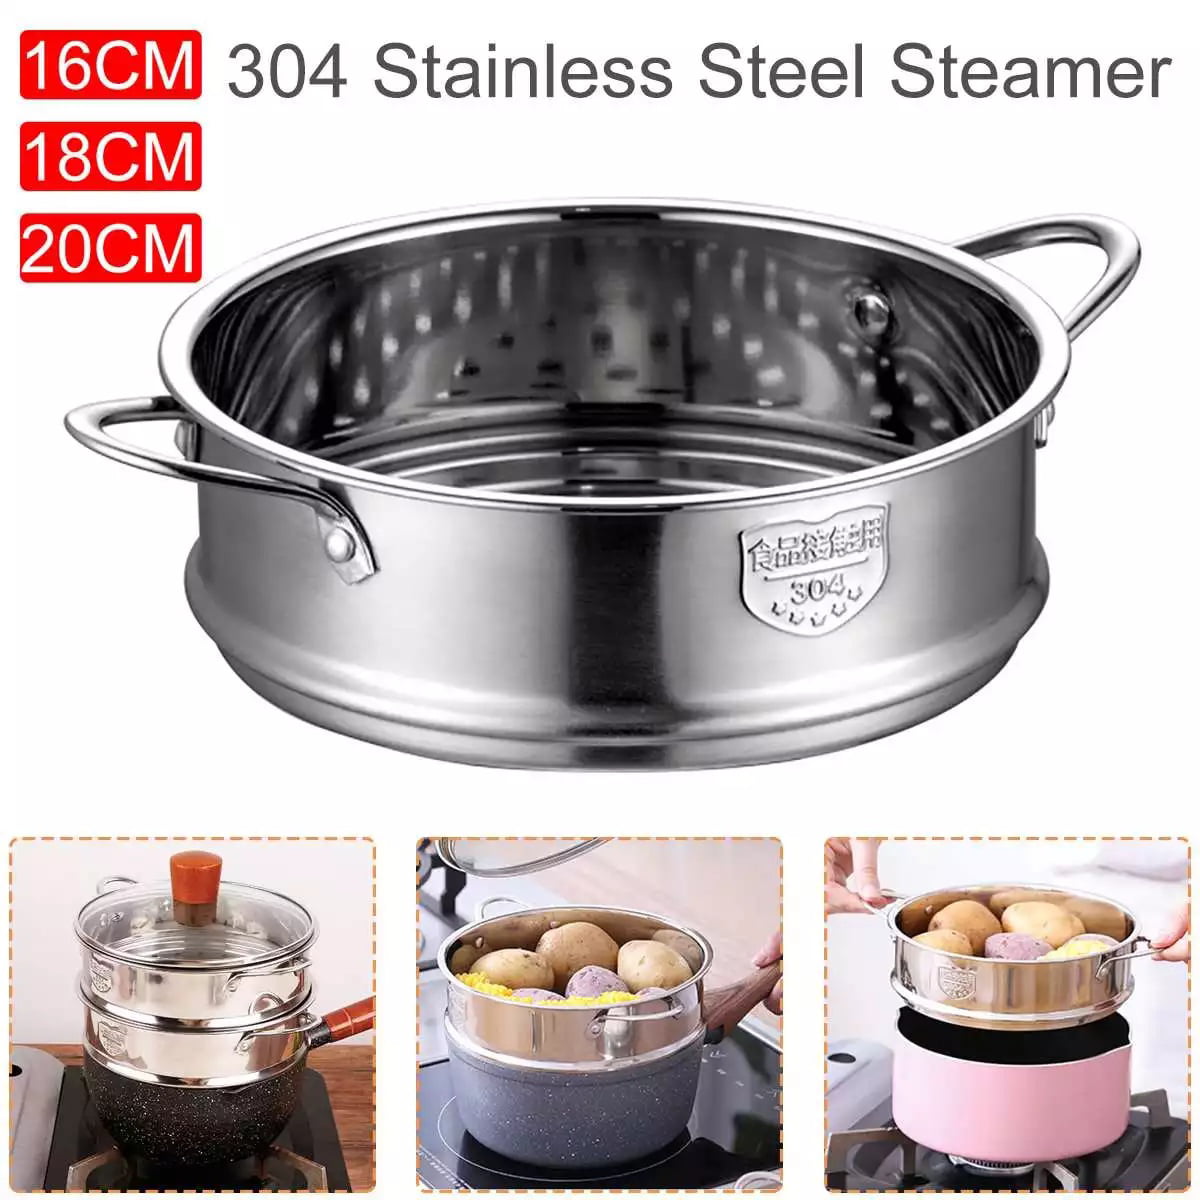 Stainless Steel Steam Holder Tray Shelf Cooking Accessories Steam Cooker Accessories for Cooking Baking Small Diameter 20cm Round Steamer Rack